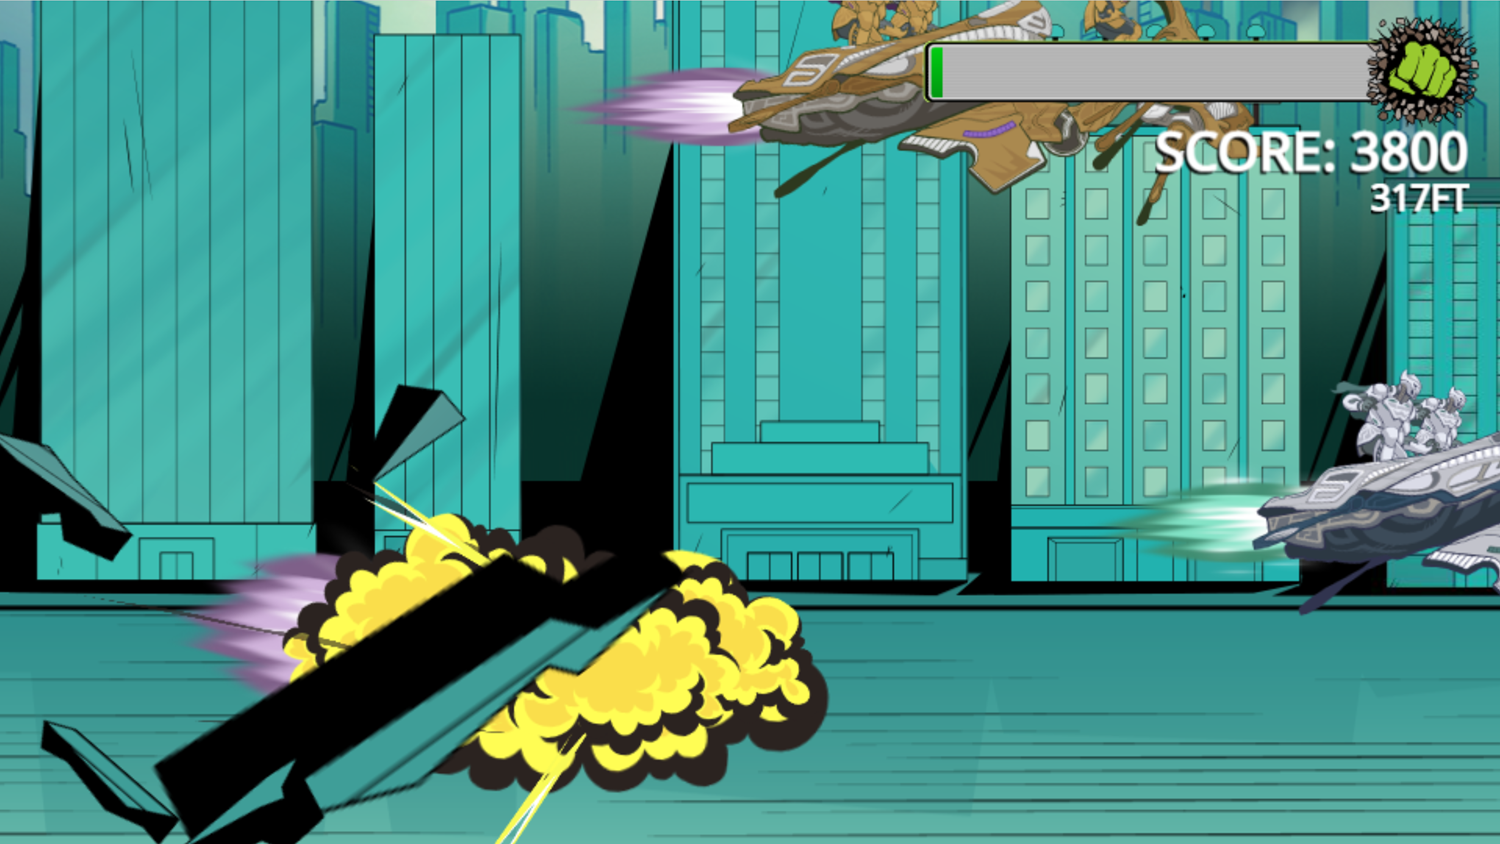 Incredible Hulk Chitauri Takedown Game Ending Smash Screenshot.